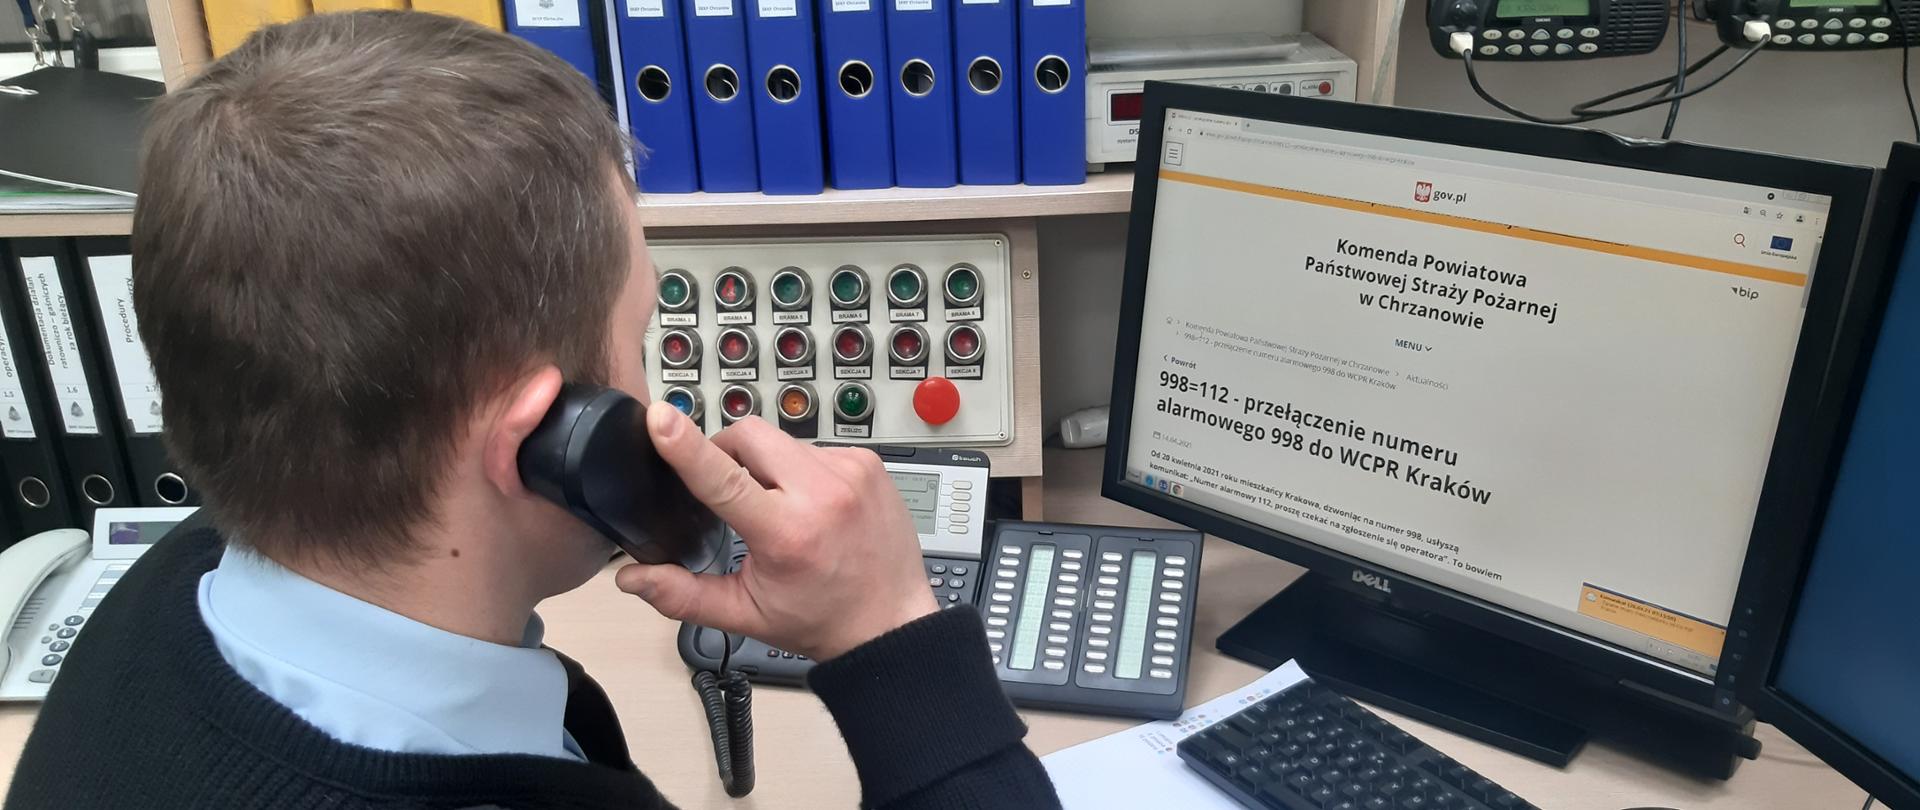 Na zdjęciu dyżurny straży trzyma słuchawkę, wykonuje połączenie testowe do CPR Kraków.